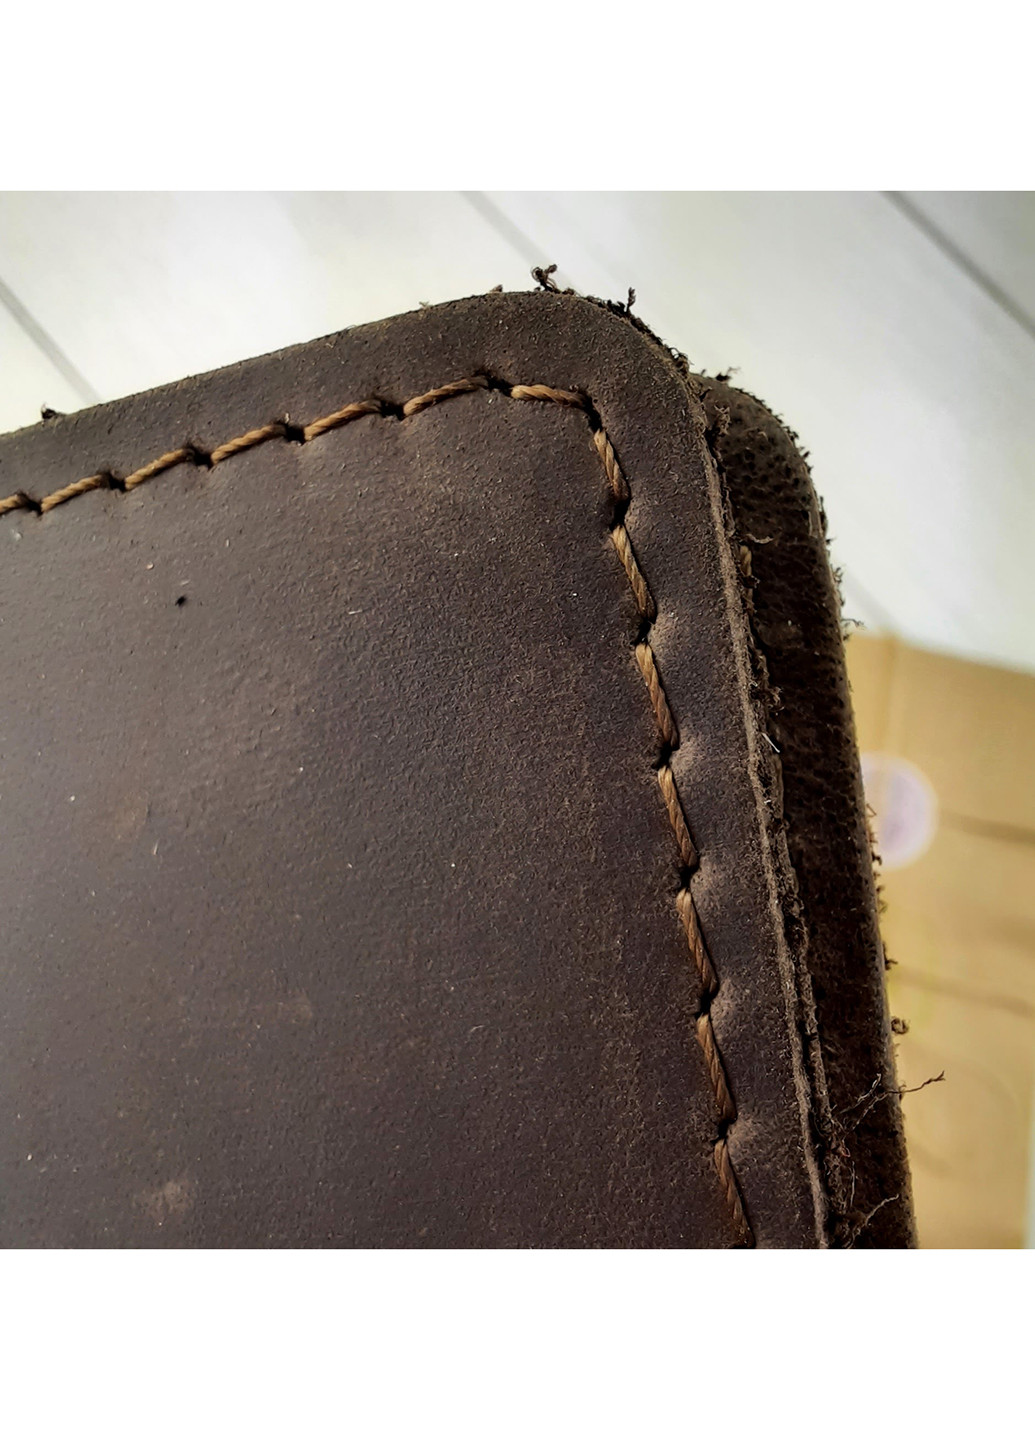 Обложка кожаная на ID паспорт, права HC0047 коричневая HandyCover однотонные коричневые кэжуалы